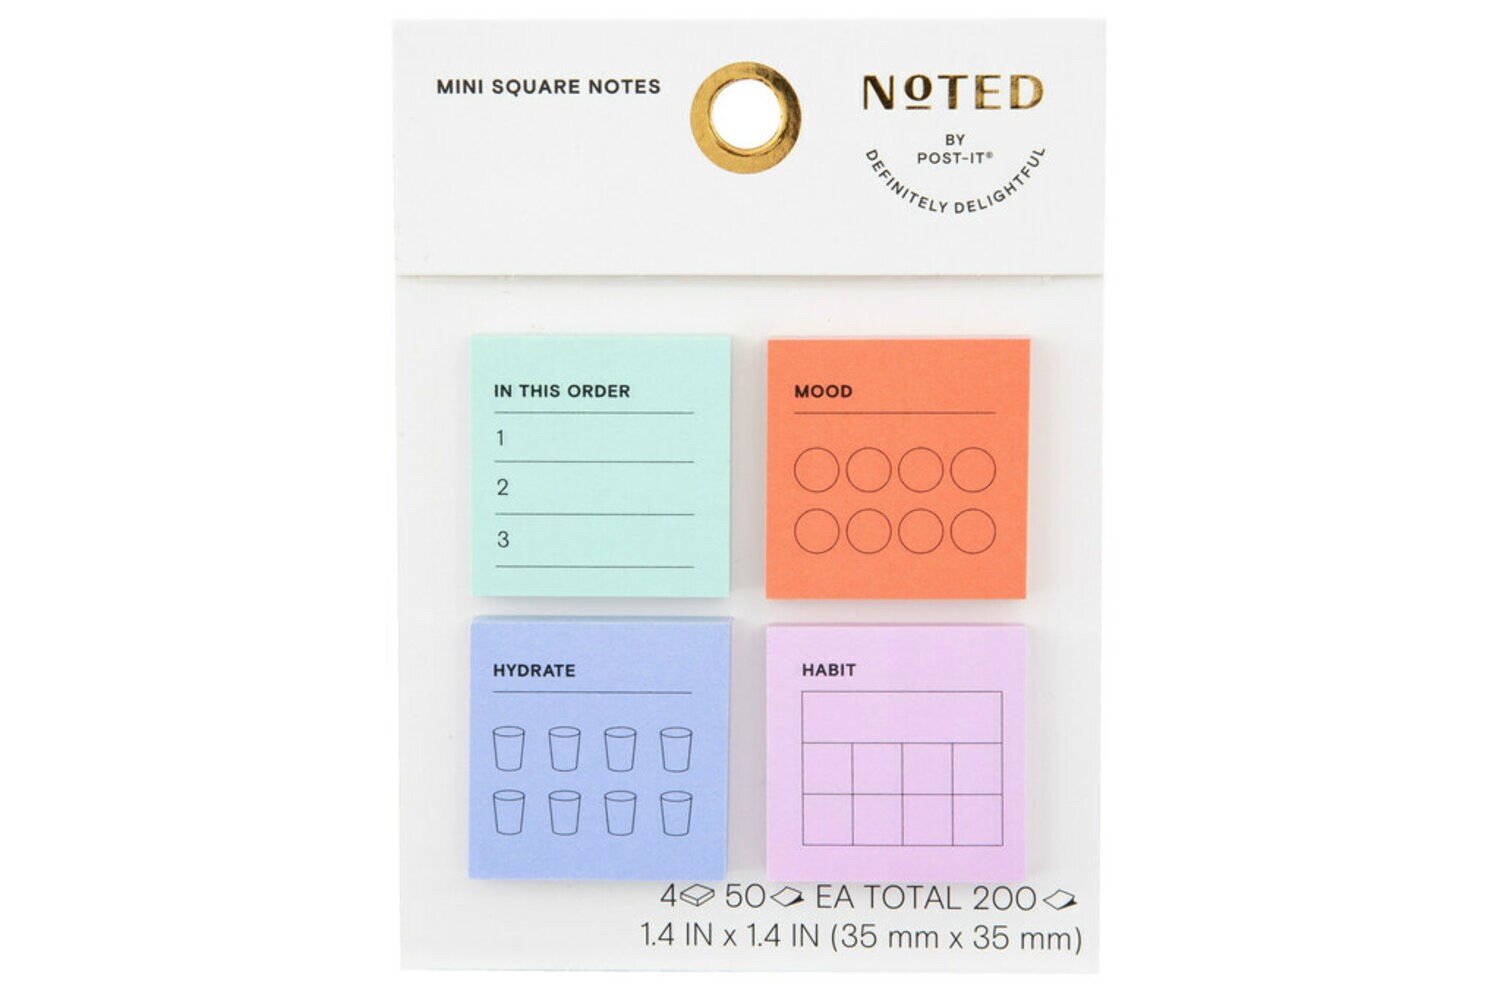 7100305836 - Post-it Mini Notes NTD8-MINI-1, 1.4 in x 1.4 in (35 mm x 35 mm)